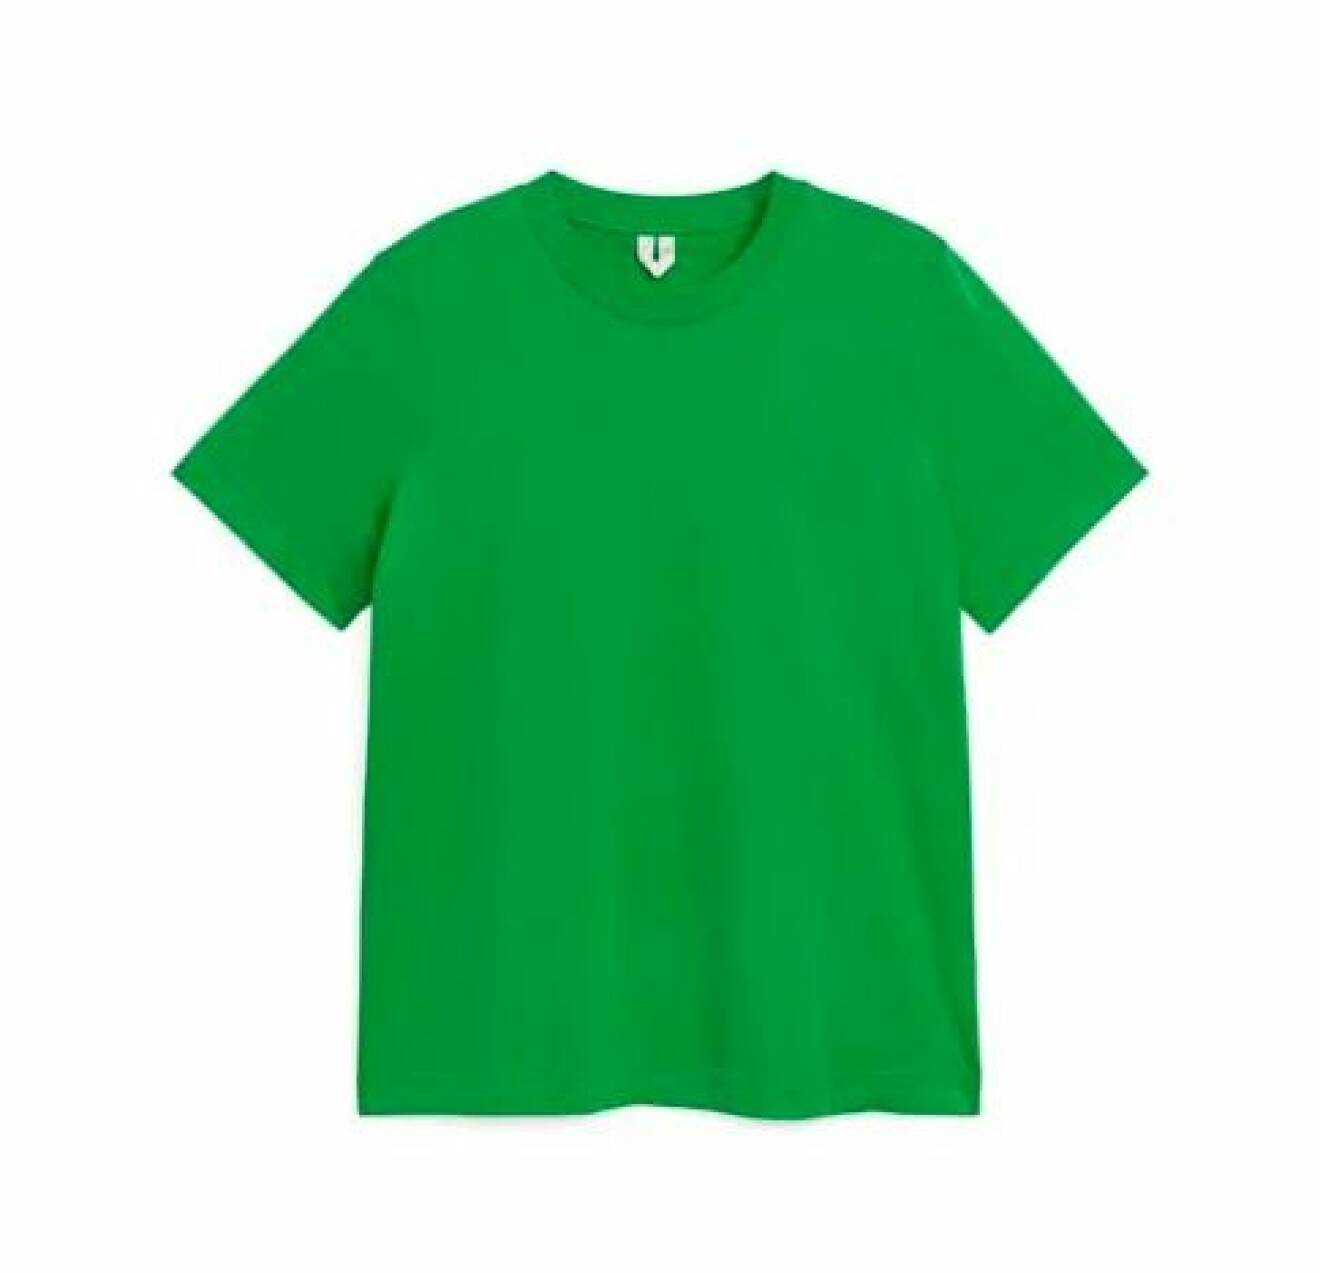 Ärtgrön t-shirt med rundad hals. T-shirt från Arket.